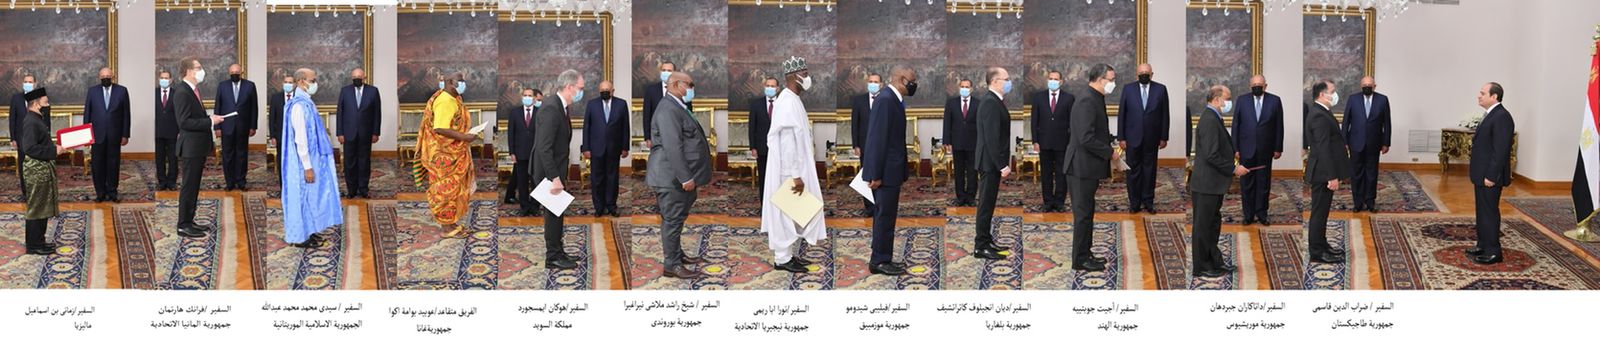 الرئيس السيسي يتسلم أوراق اعتماد أربعة وعشرين سفيرًا جديداً (2)